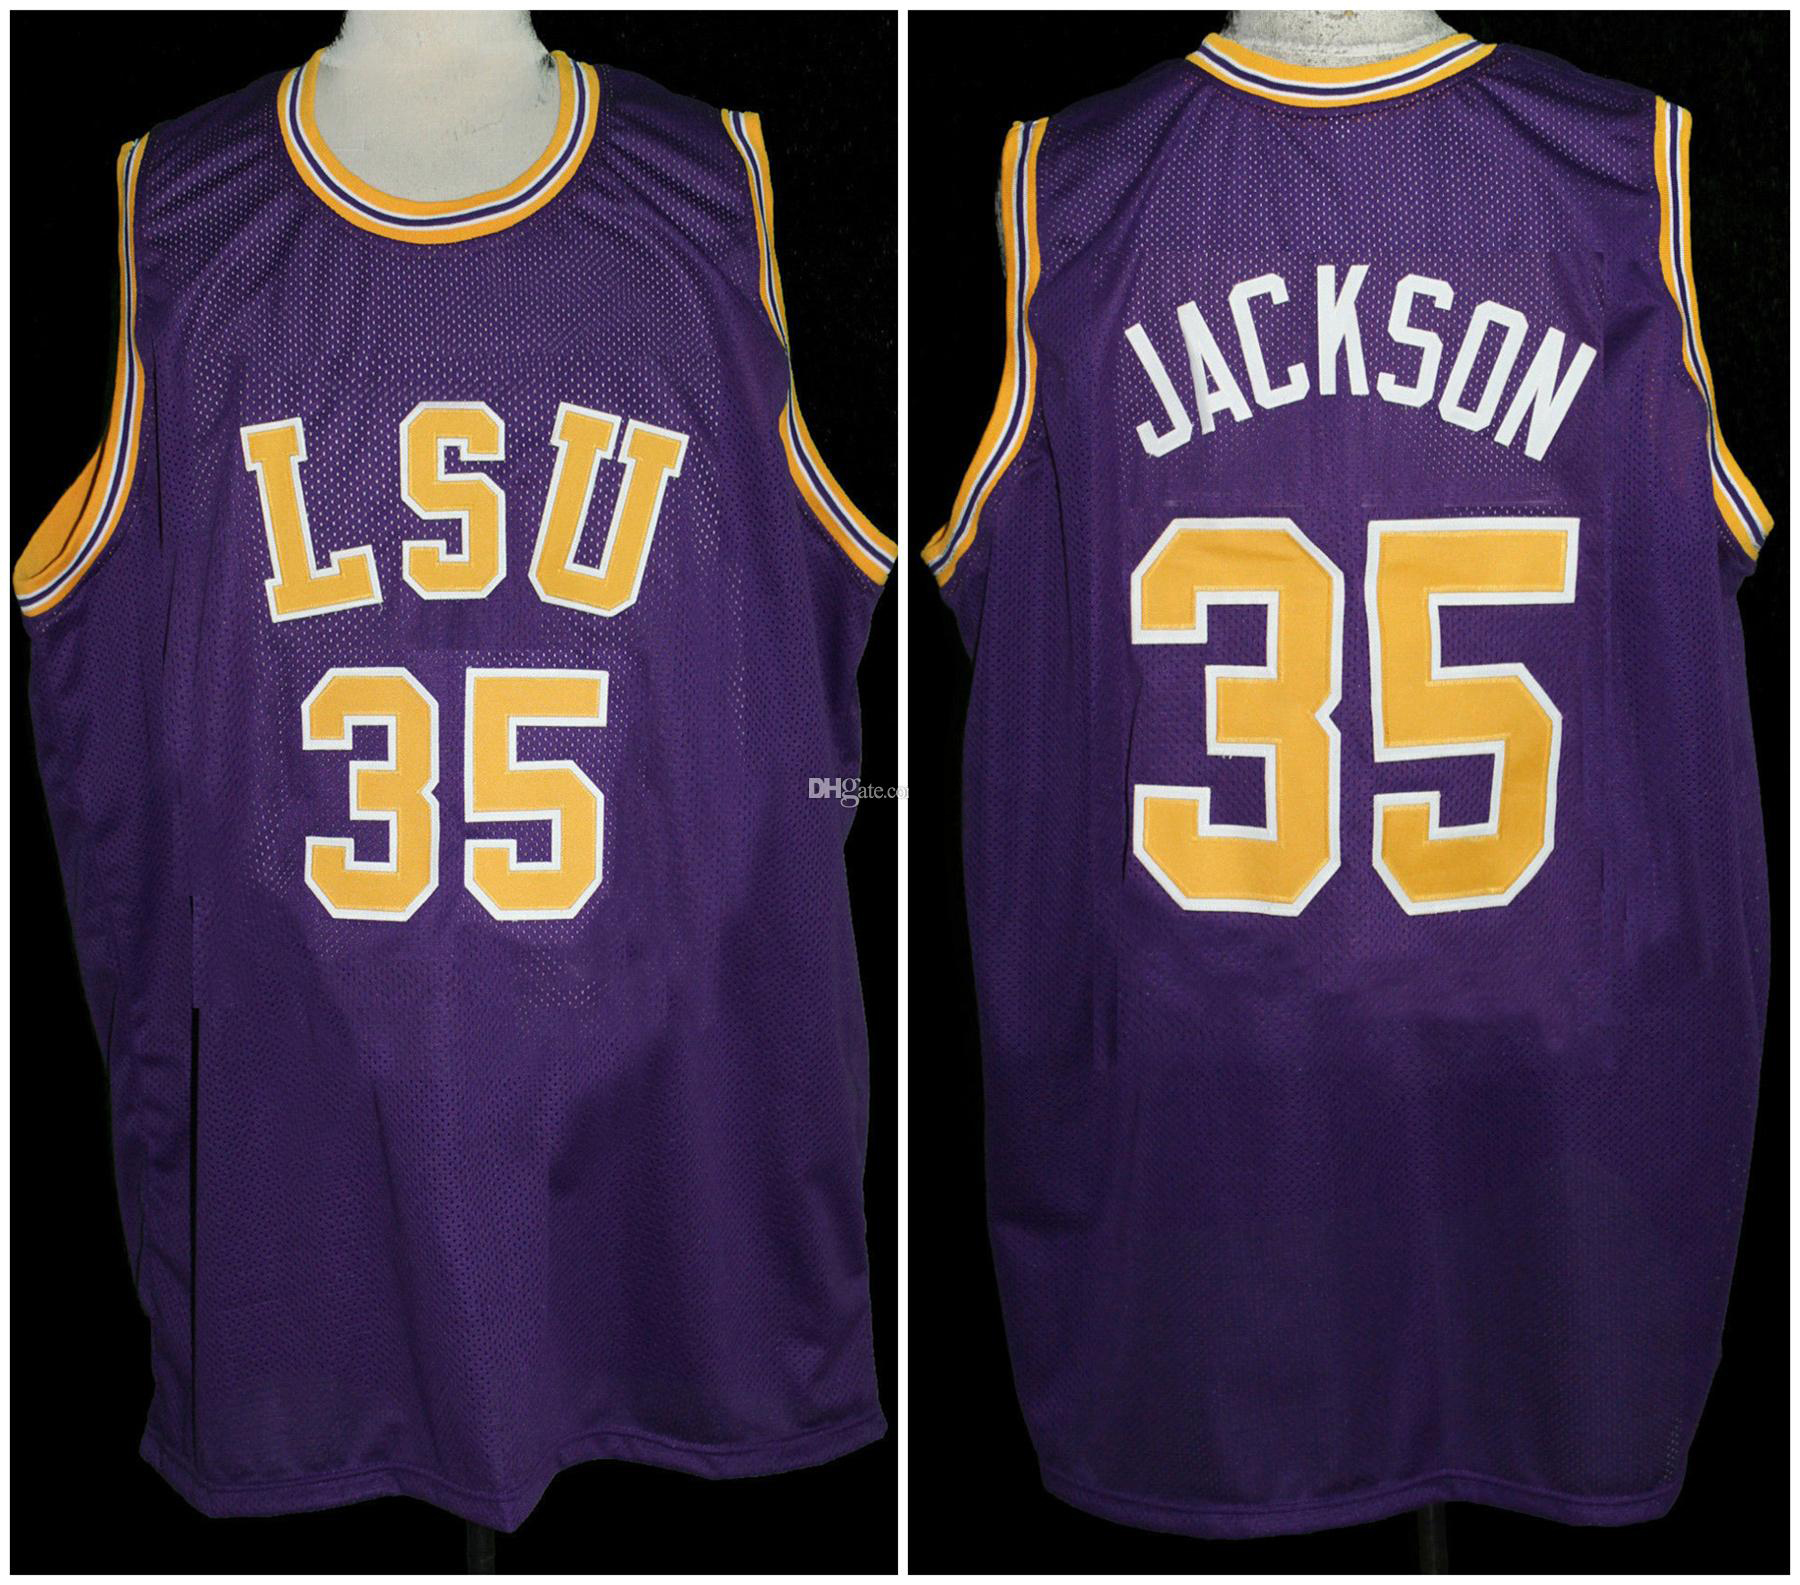 Chris Jackson # 35 LSU Tigers College Retro Basketball Jersey Hommes Cousu Personnalisé Tout Numéro Nom Maillots